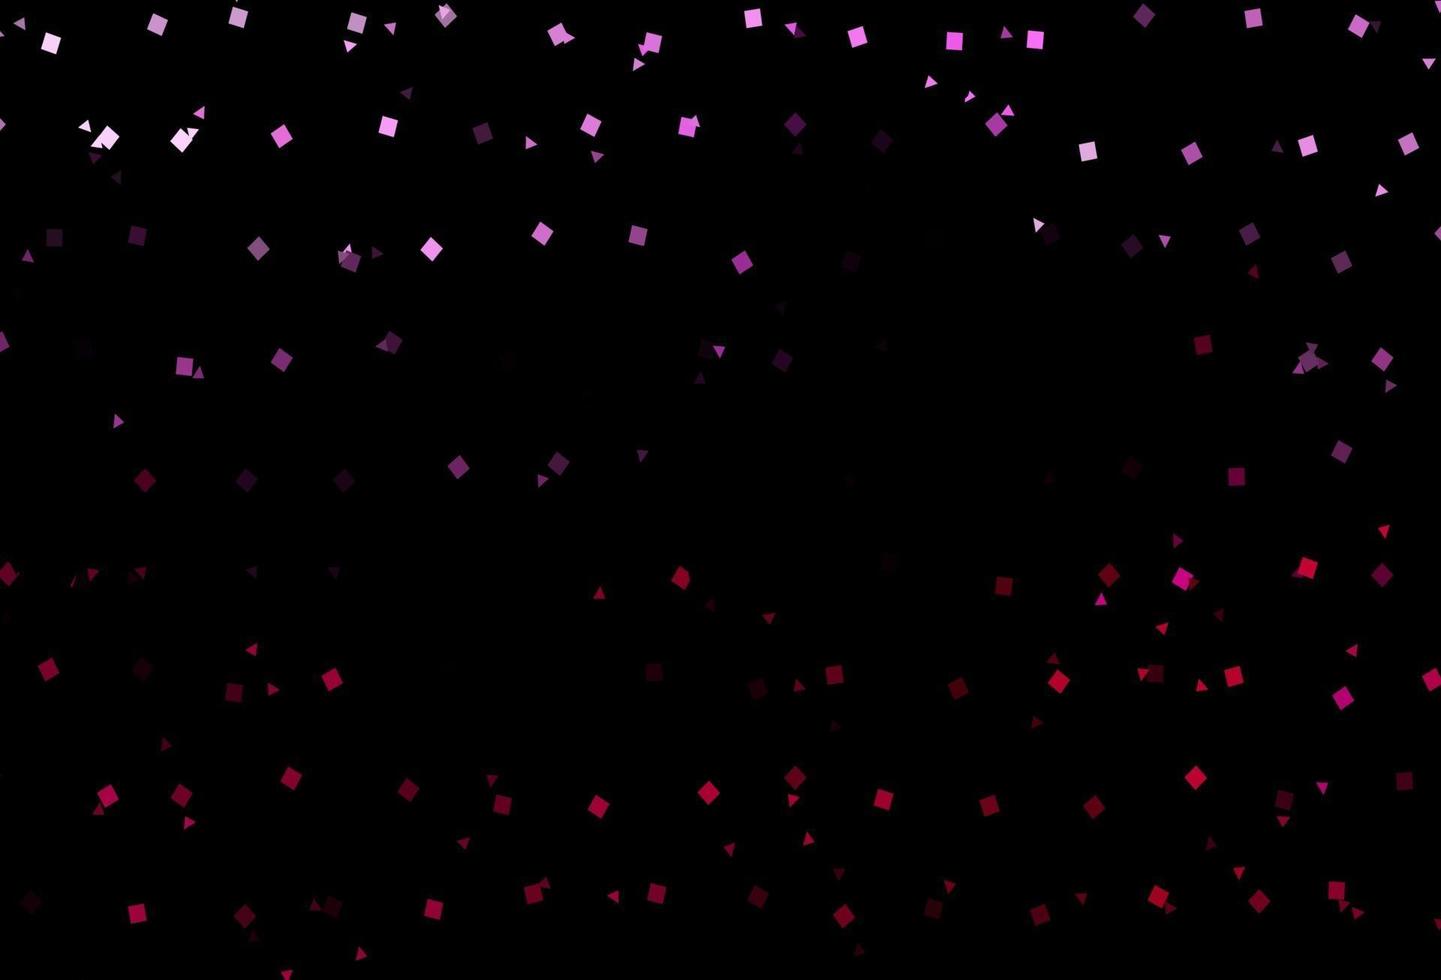 padrão de vetor rosa escuro em estilo poligonal com círculos.